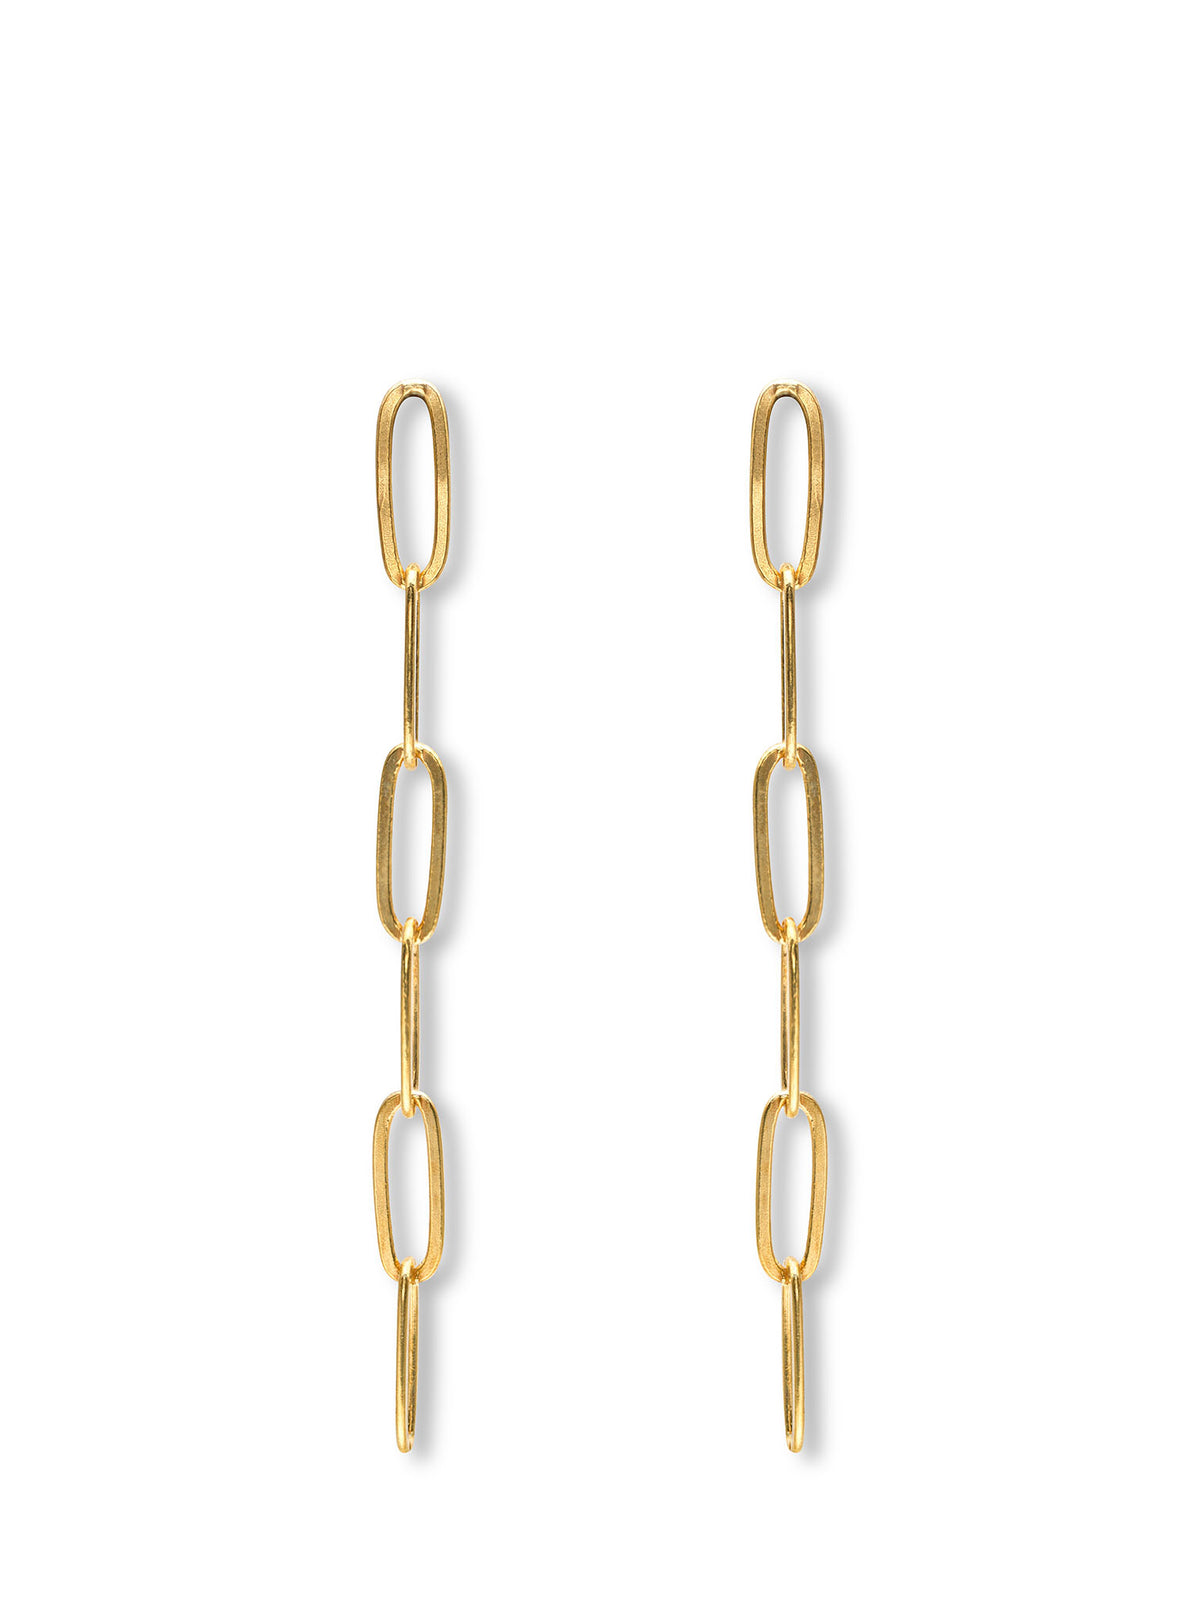 Nautilus Chain Earrings